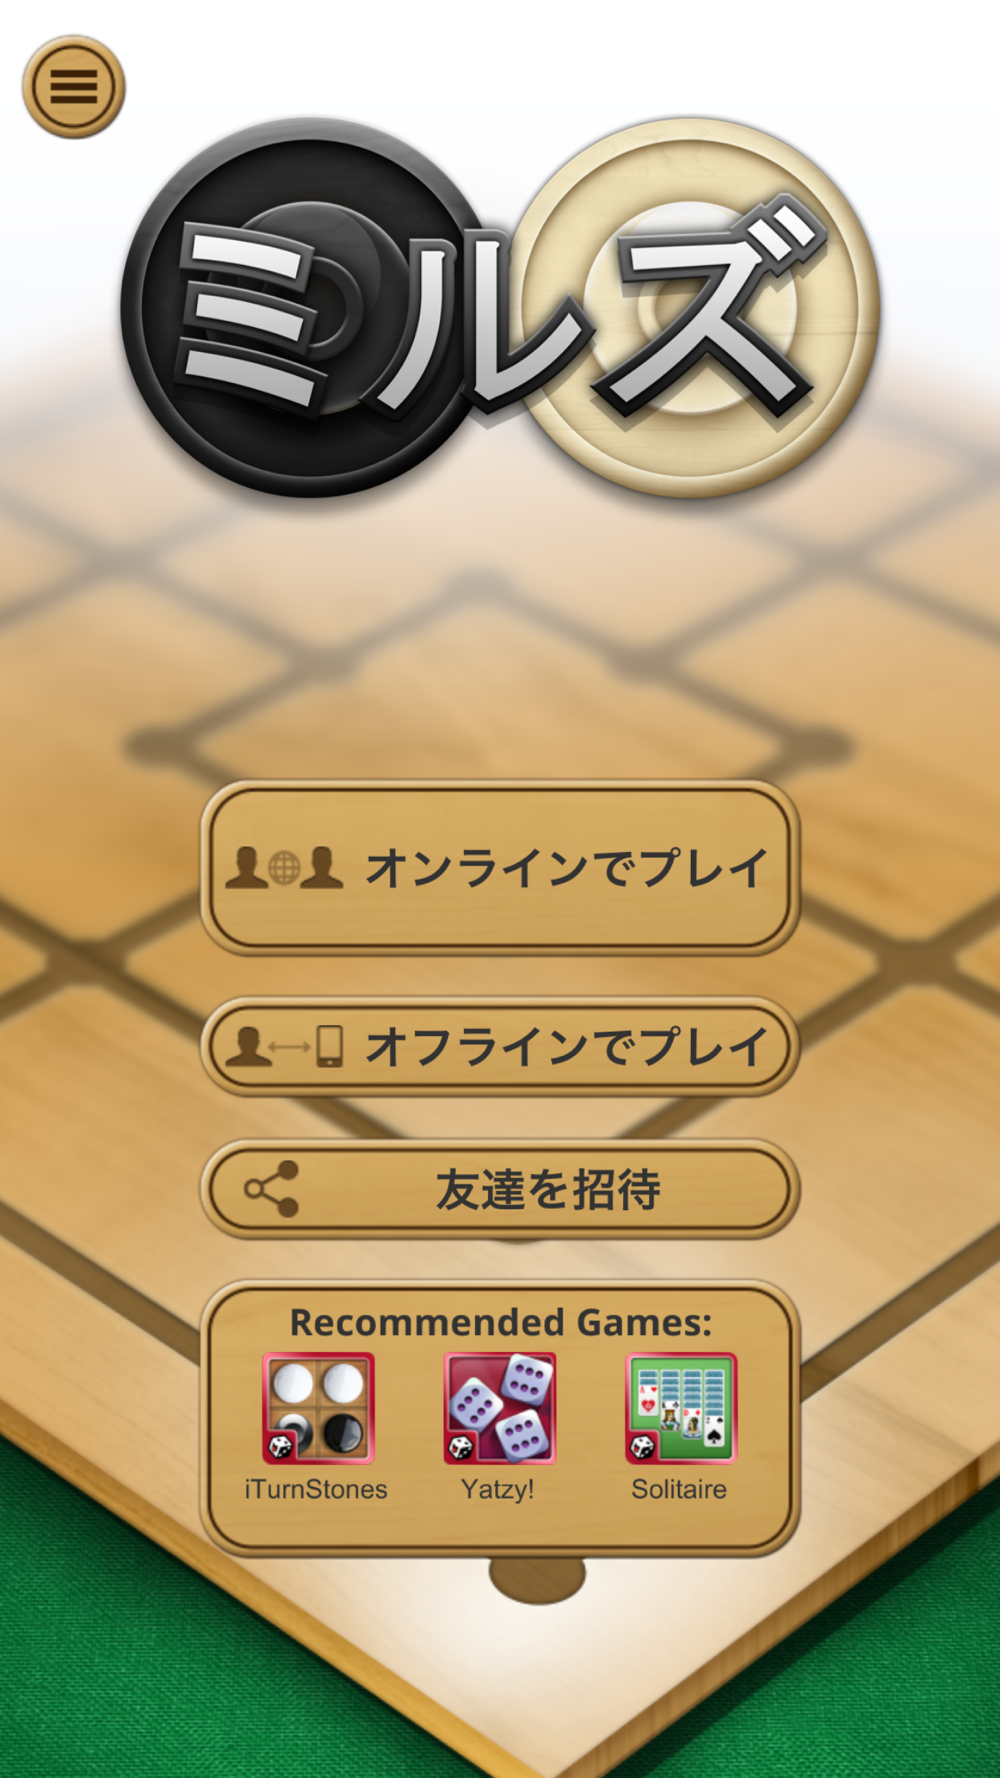 ナイン メンズ モリス ボードゲーム Free Download App For Iphone Steprimo Com